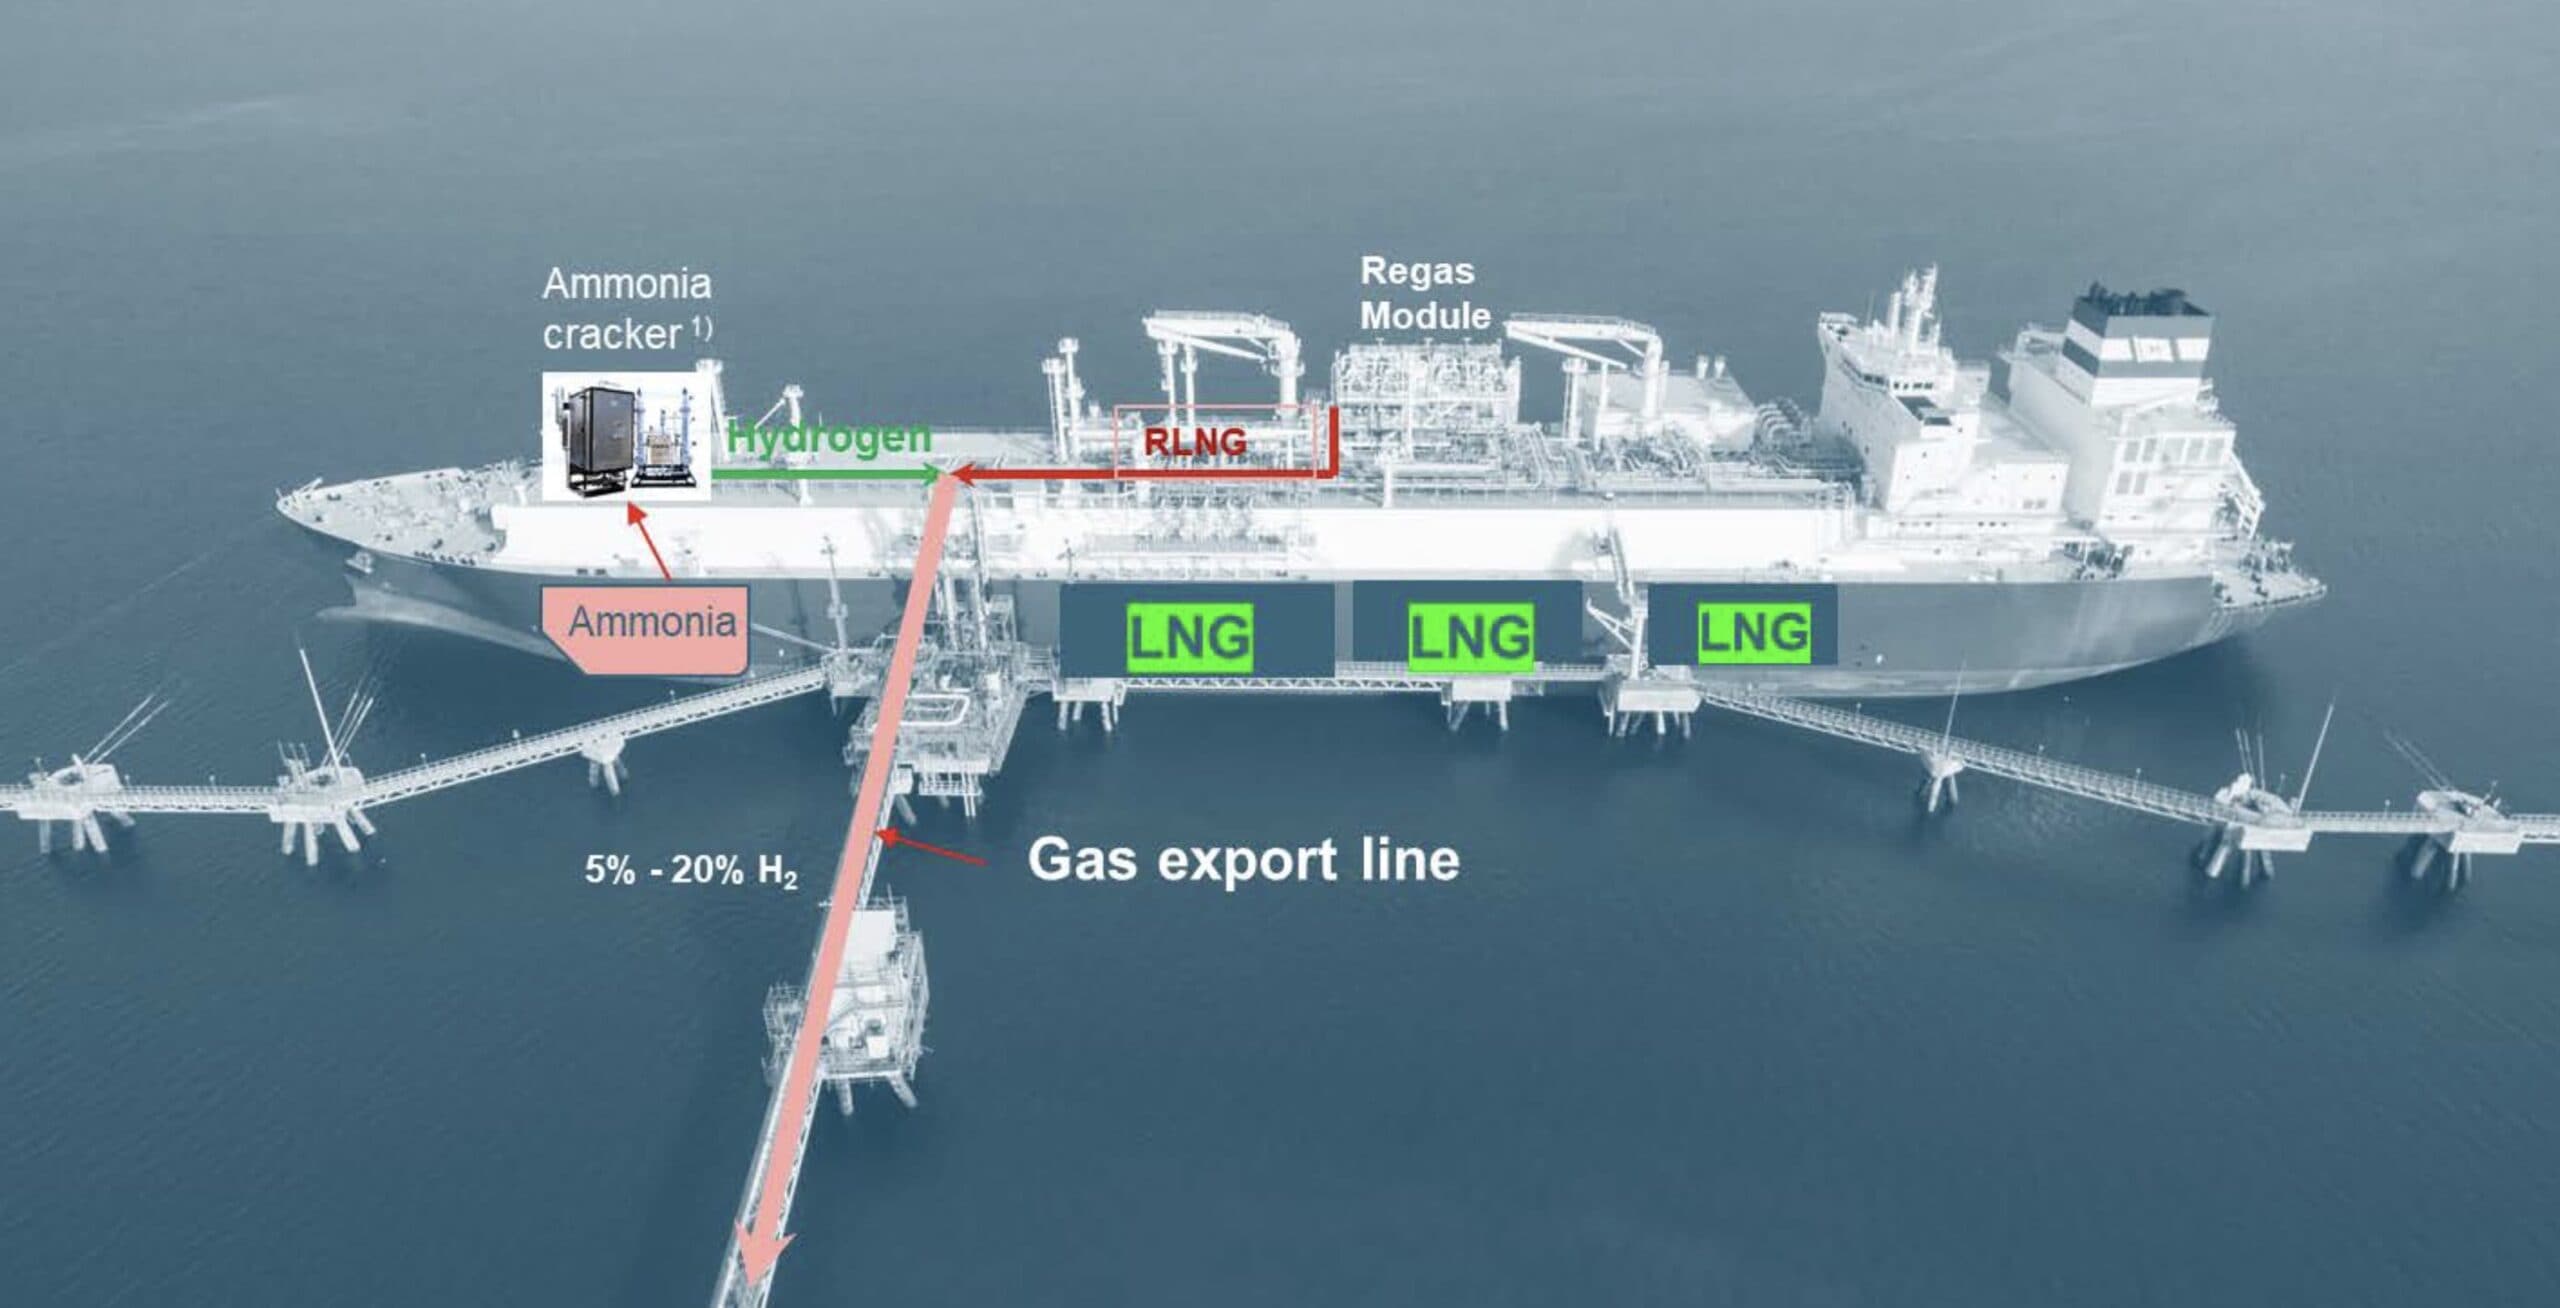 Hoeegh-esperanza-LNG-regasifizierung-wilhelmshaven-Umweltschutz-energiesicherheit